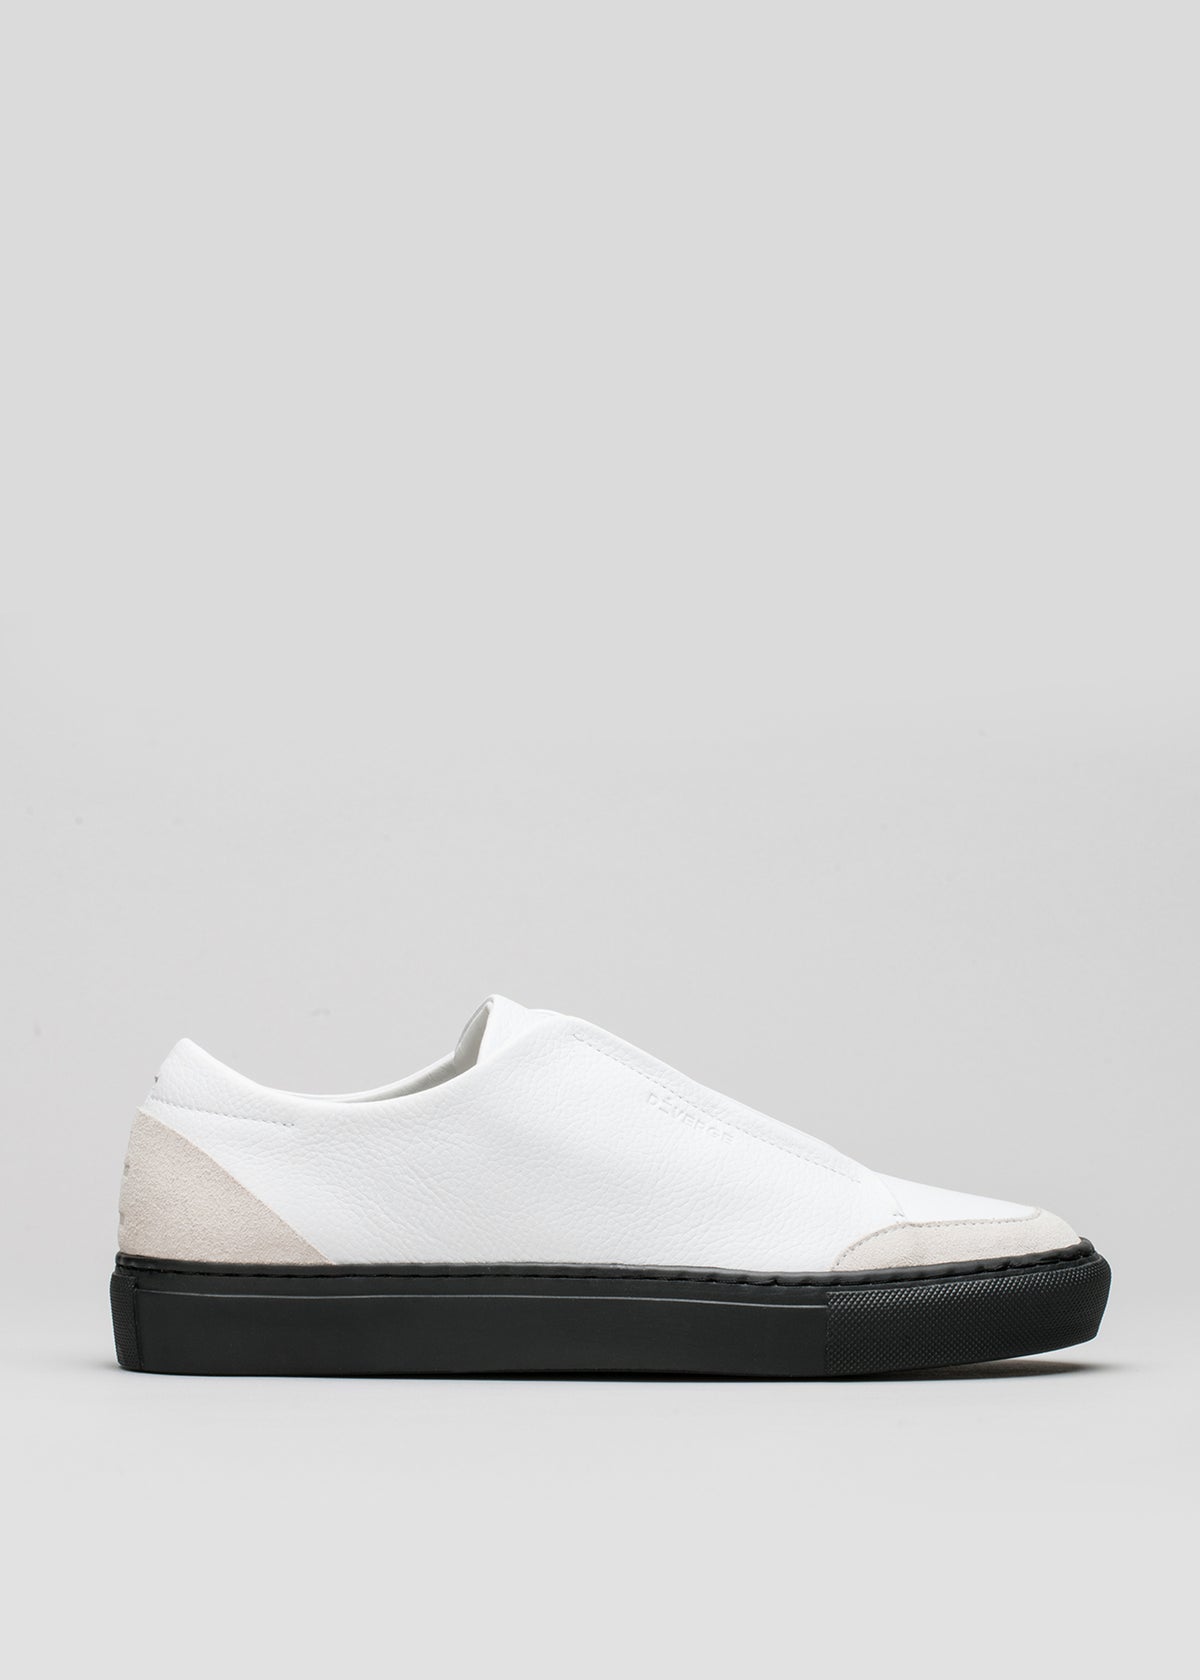 V5 Snow White Floater w/Black slip-on sneaker con acento beige en el talón y suela negra, sobre fondo gris claro. Forman parte de nuestra colección de zapatillas personalizadas.